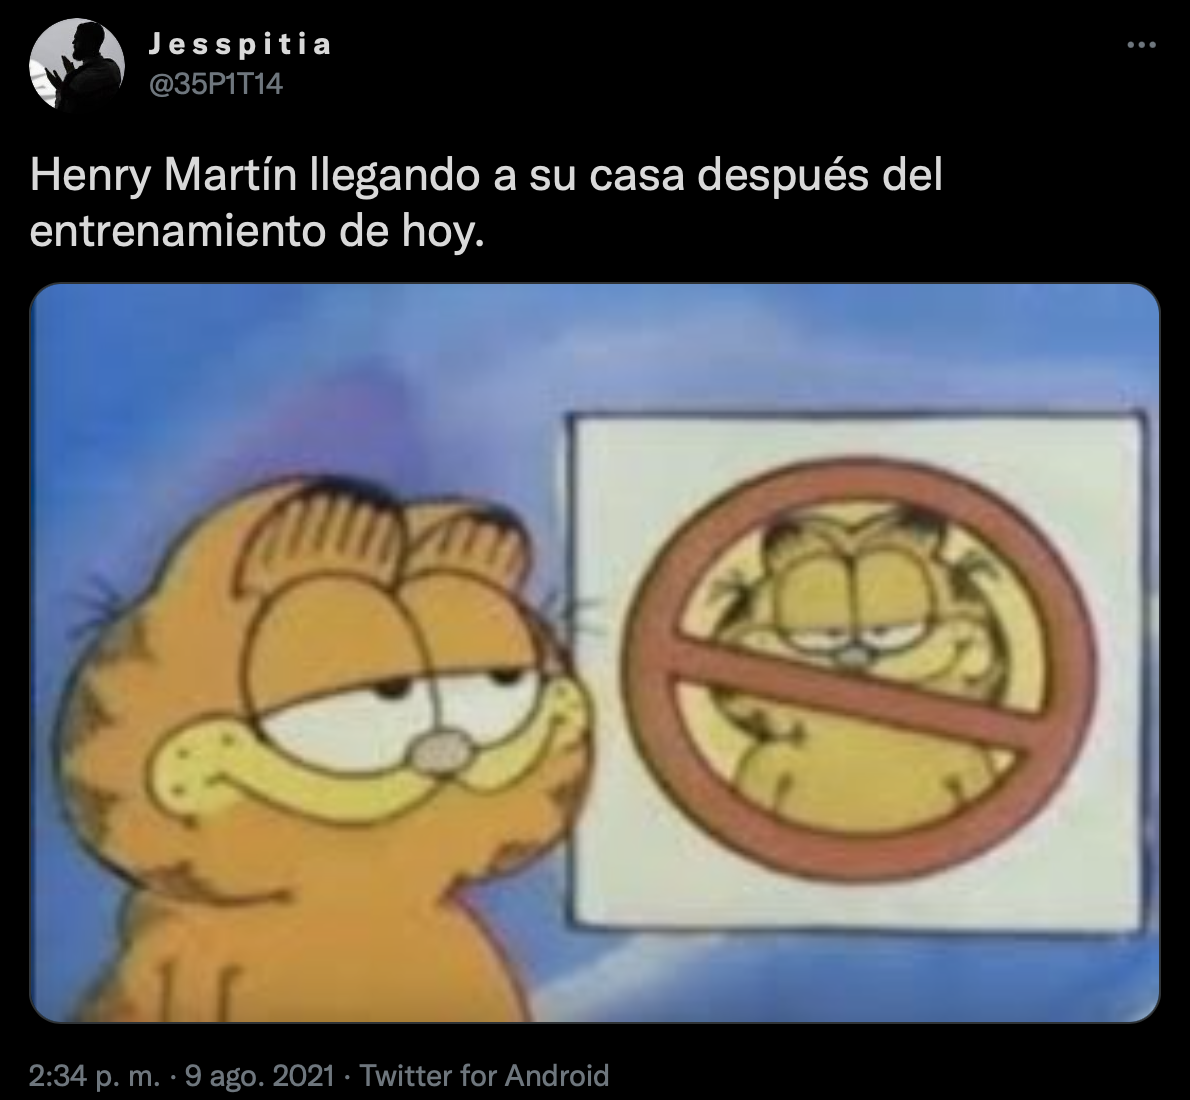 Los memes de la supuesta infidelidad de Henry Martín, jugador del Club América (Foto: Twitter/@35P1T14)